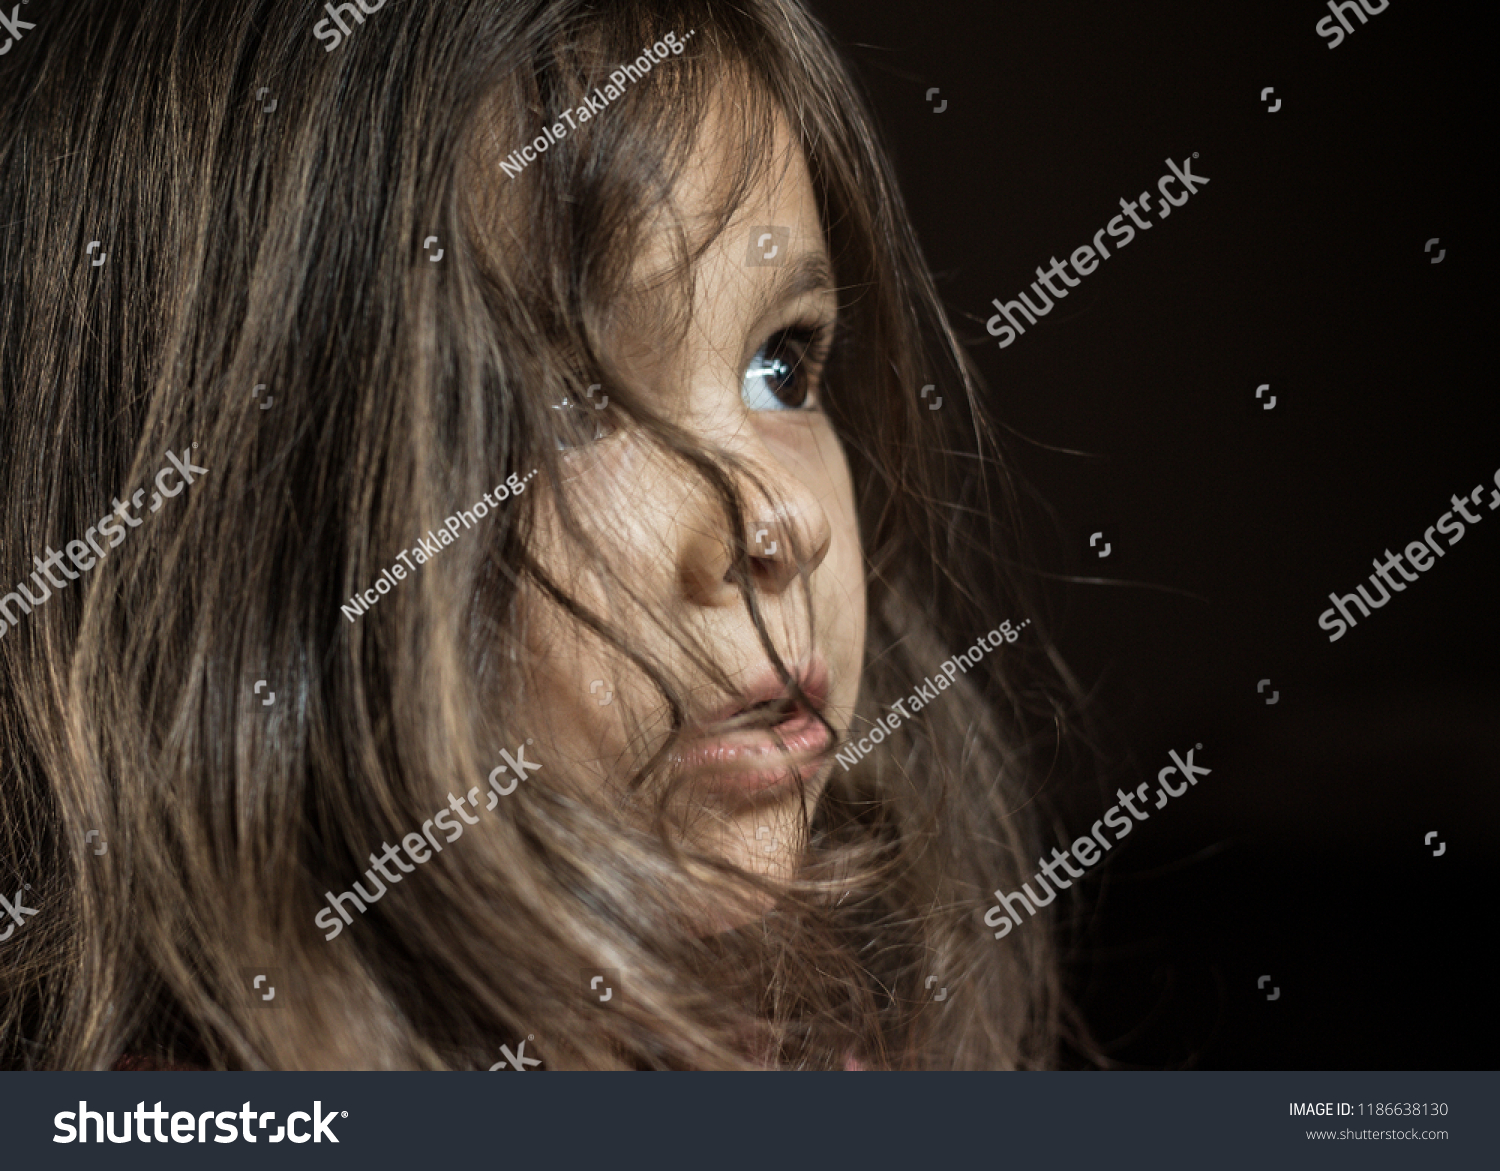 3歳のレバノン人と白人の女の子の横顔を 畏敬と好奇心で少し上向きに見つめながら分離した接写 彼女の茶色い髪は自由に顔の周りに落ちる の写真素材 今すぐ編集